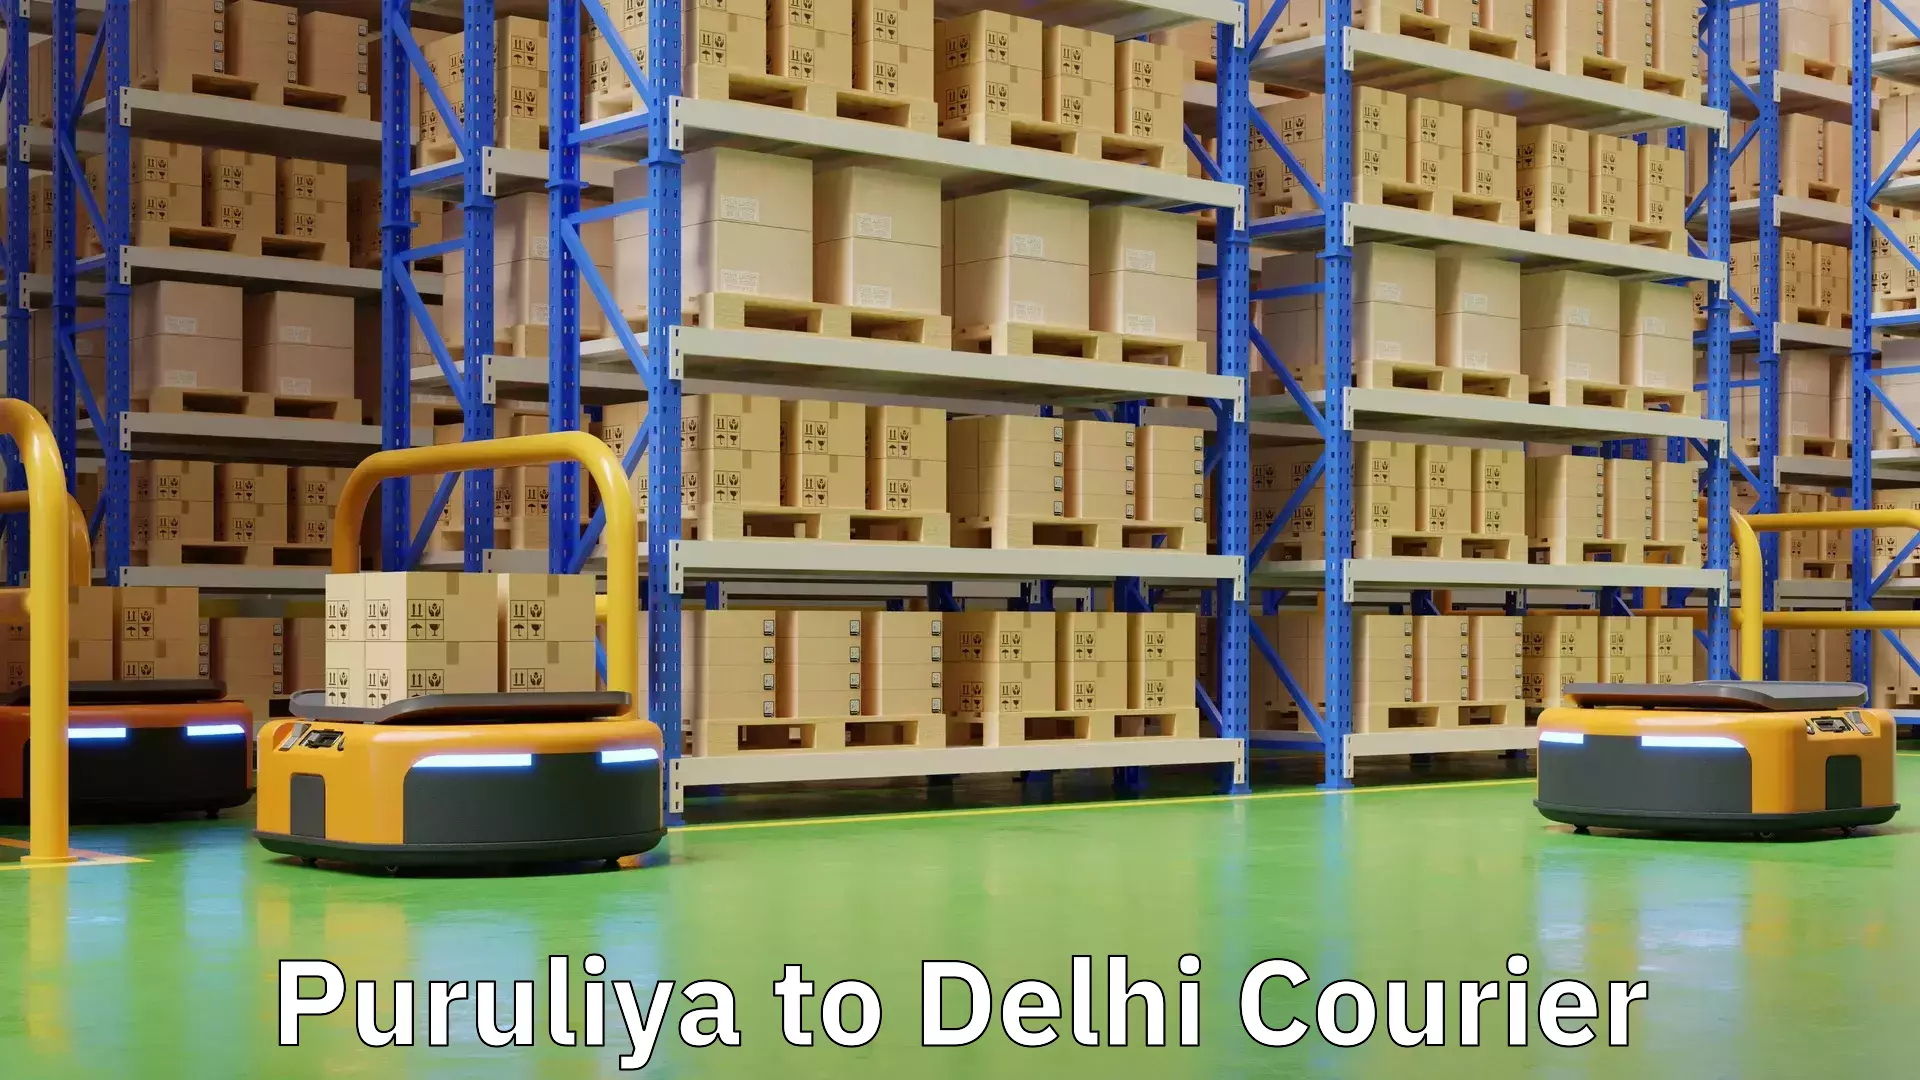 Weekend courier service Puruliya to Delhi